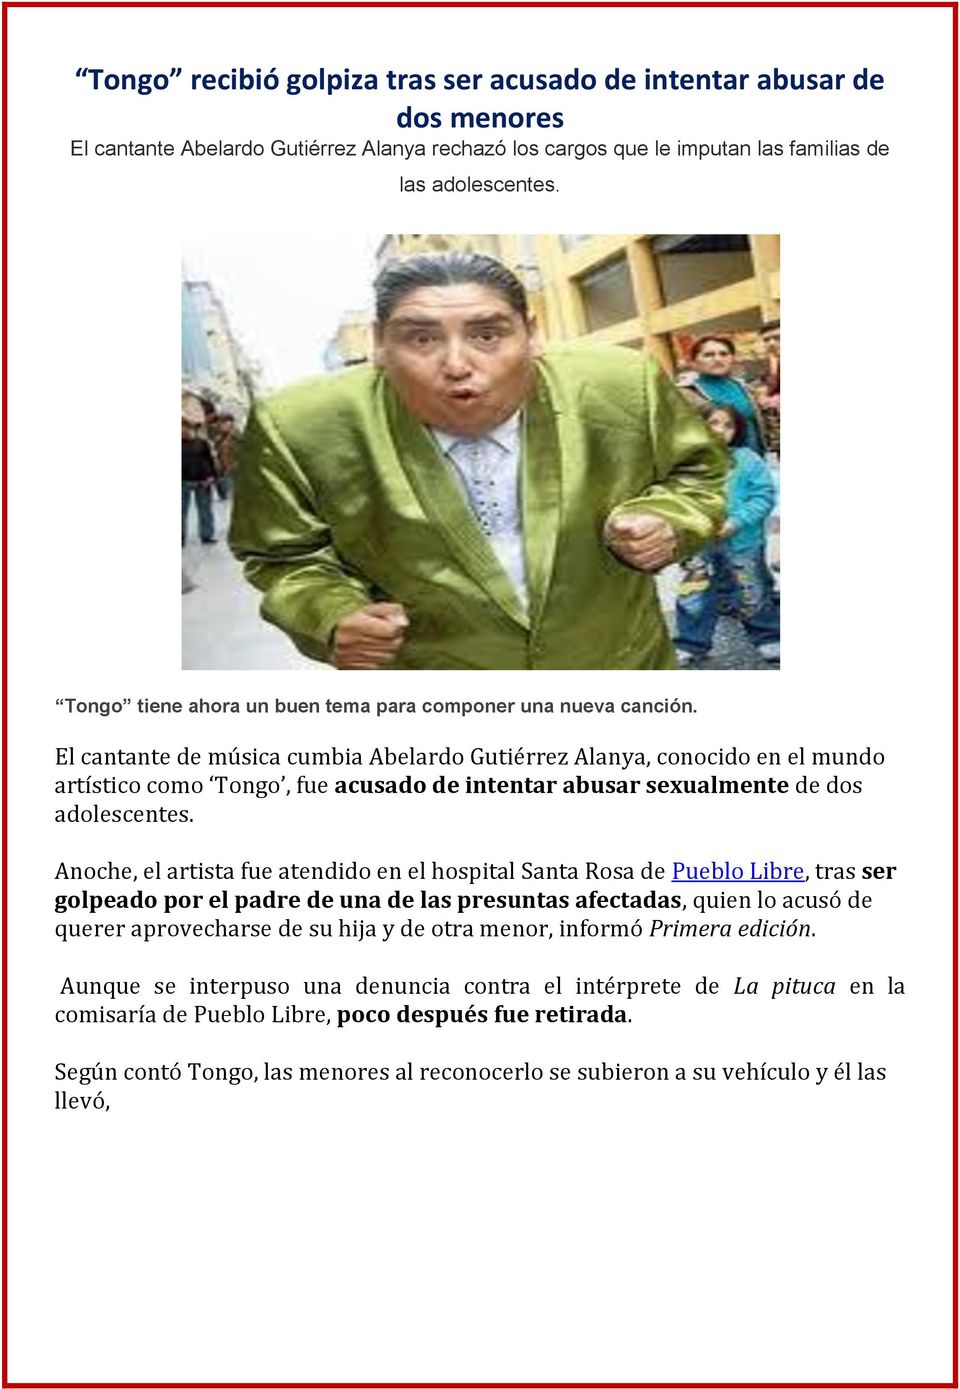 El cantante de música cumbia Abelardo Gutiérrez Alanya, conocido en el mundo artístico como Tongo, fue acusado de intentar abusar sexualmente de dos adolescentes.